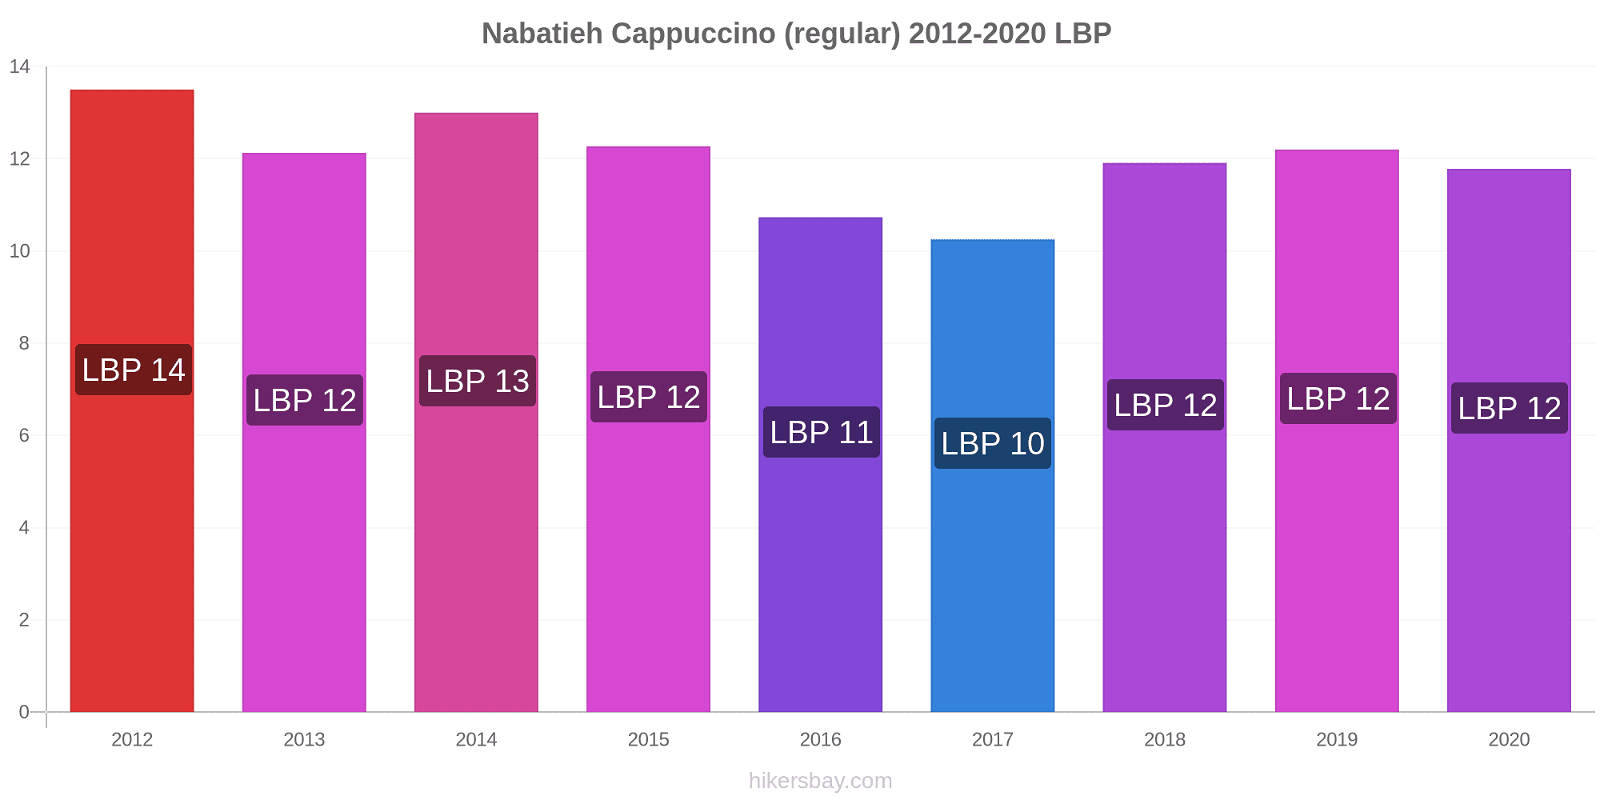 Nabatieh price changes Cappuccino (regular) hikersbay.com